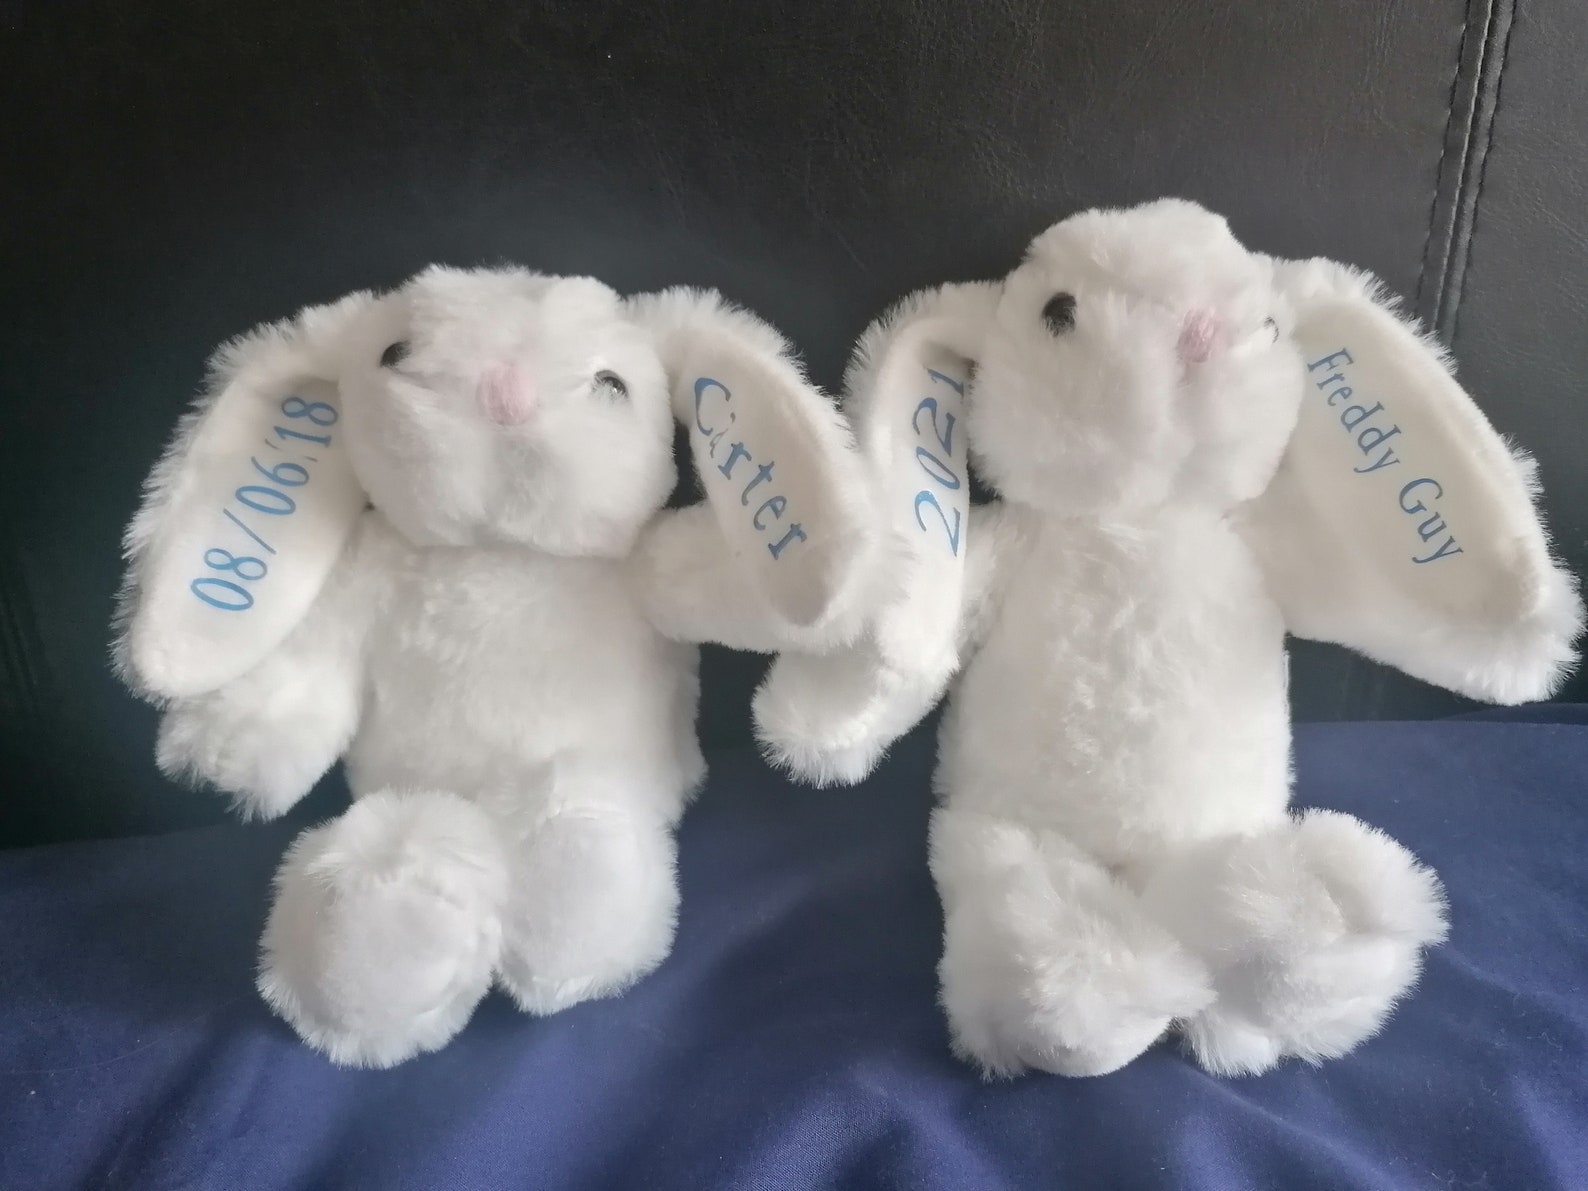 Personalised bunny teddies | Etsy